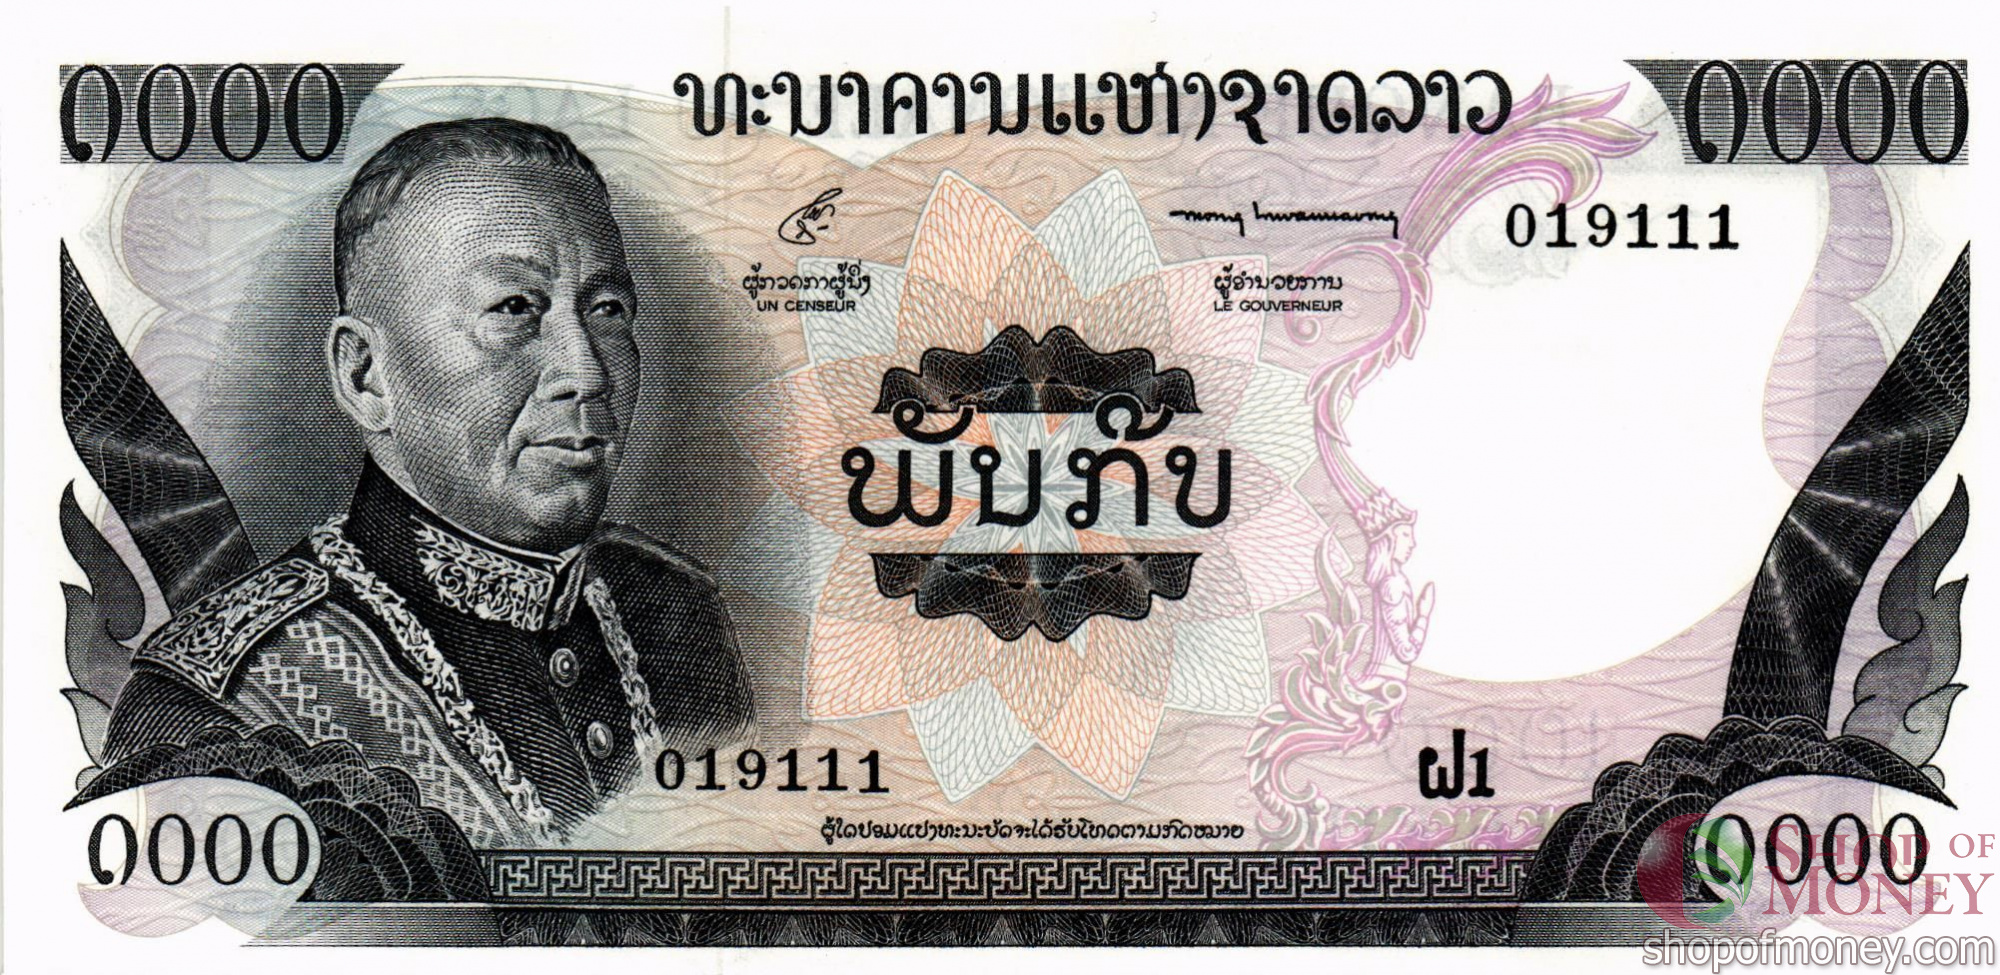 Купюры мм. 1000 КИП Лаос. Купюра лаосского кипа. Деньги Лаоса. Банкноты Лаоса.